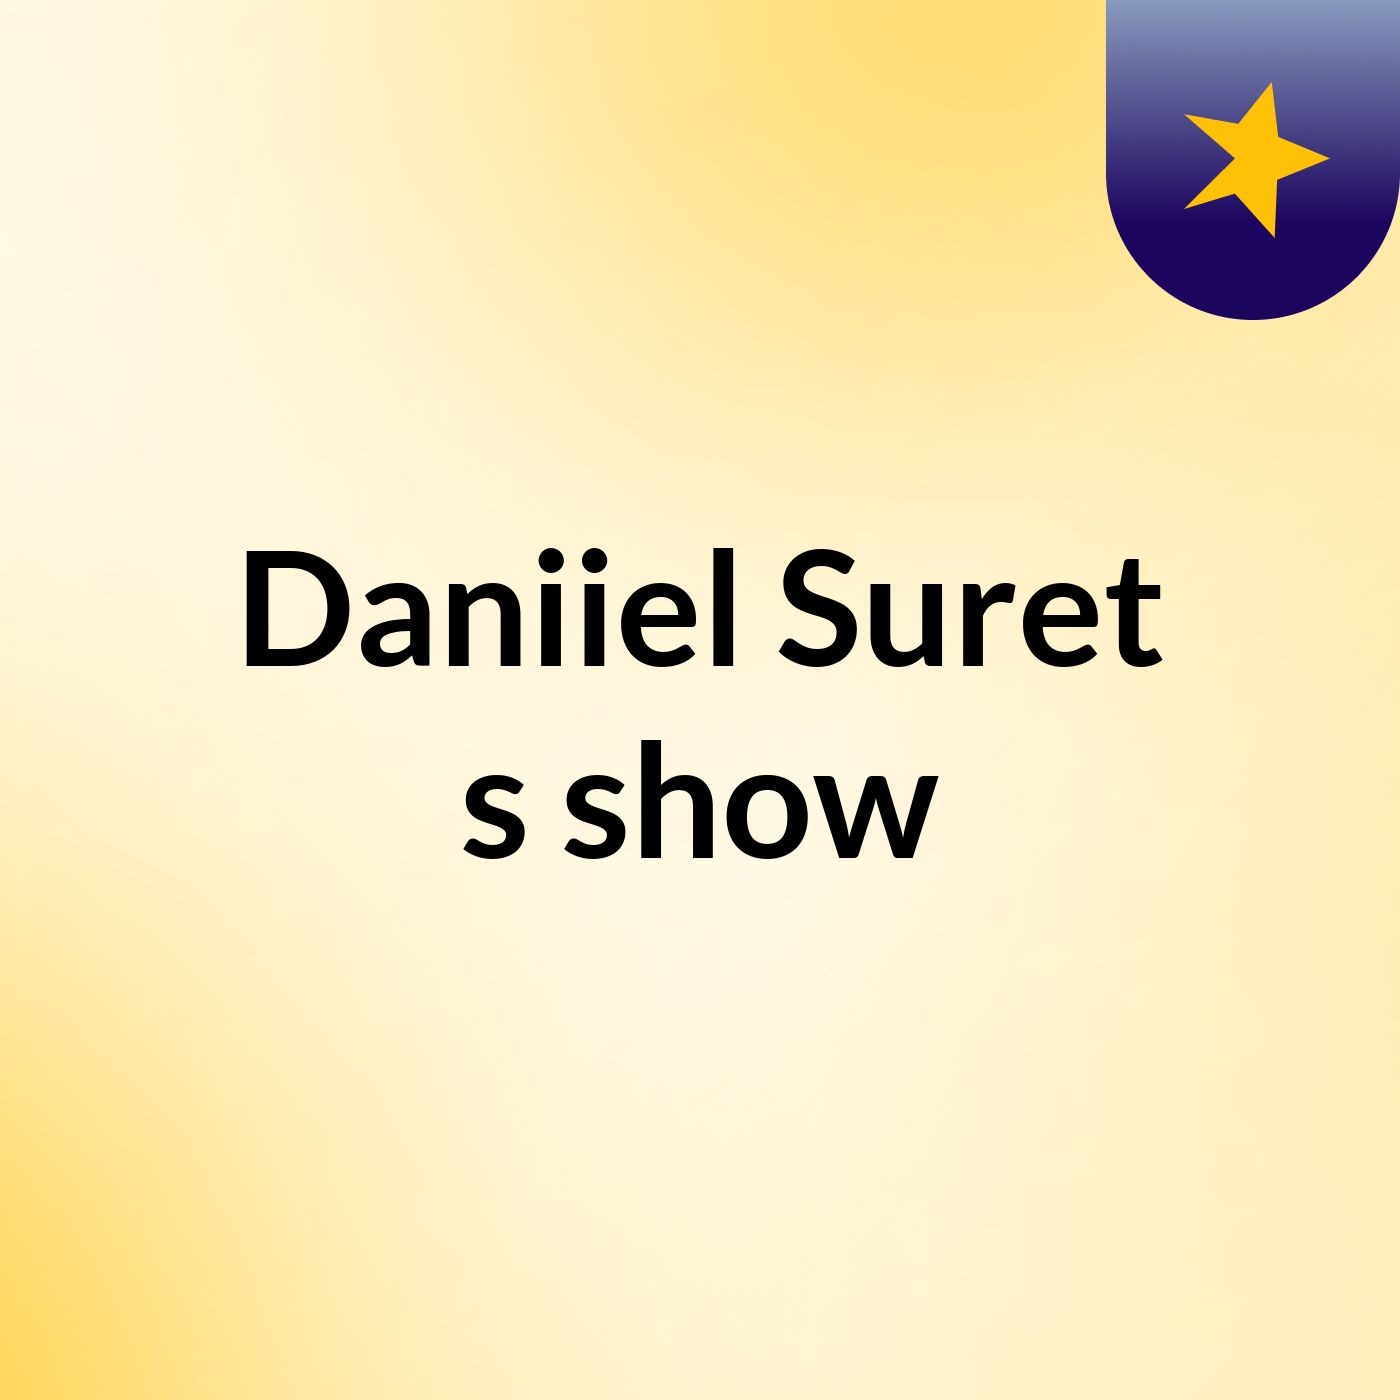 Daniiel Suret's show